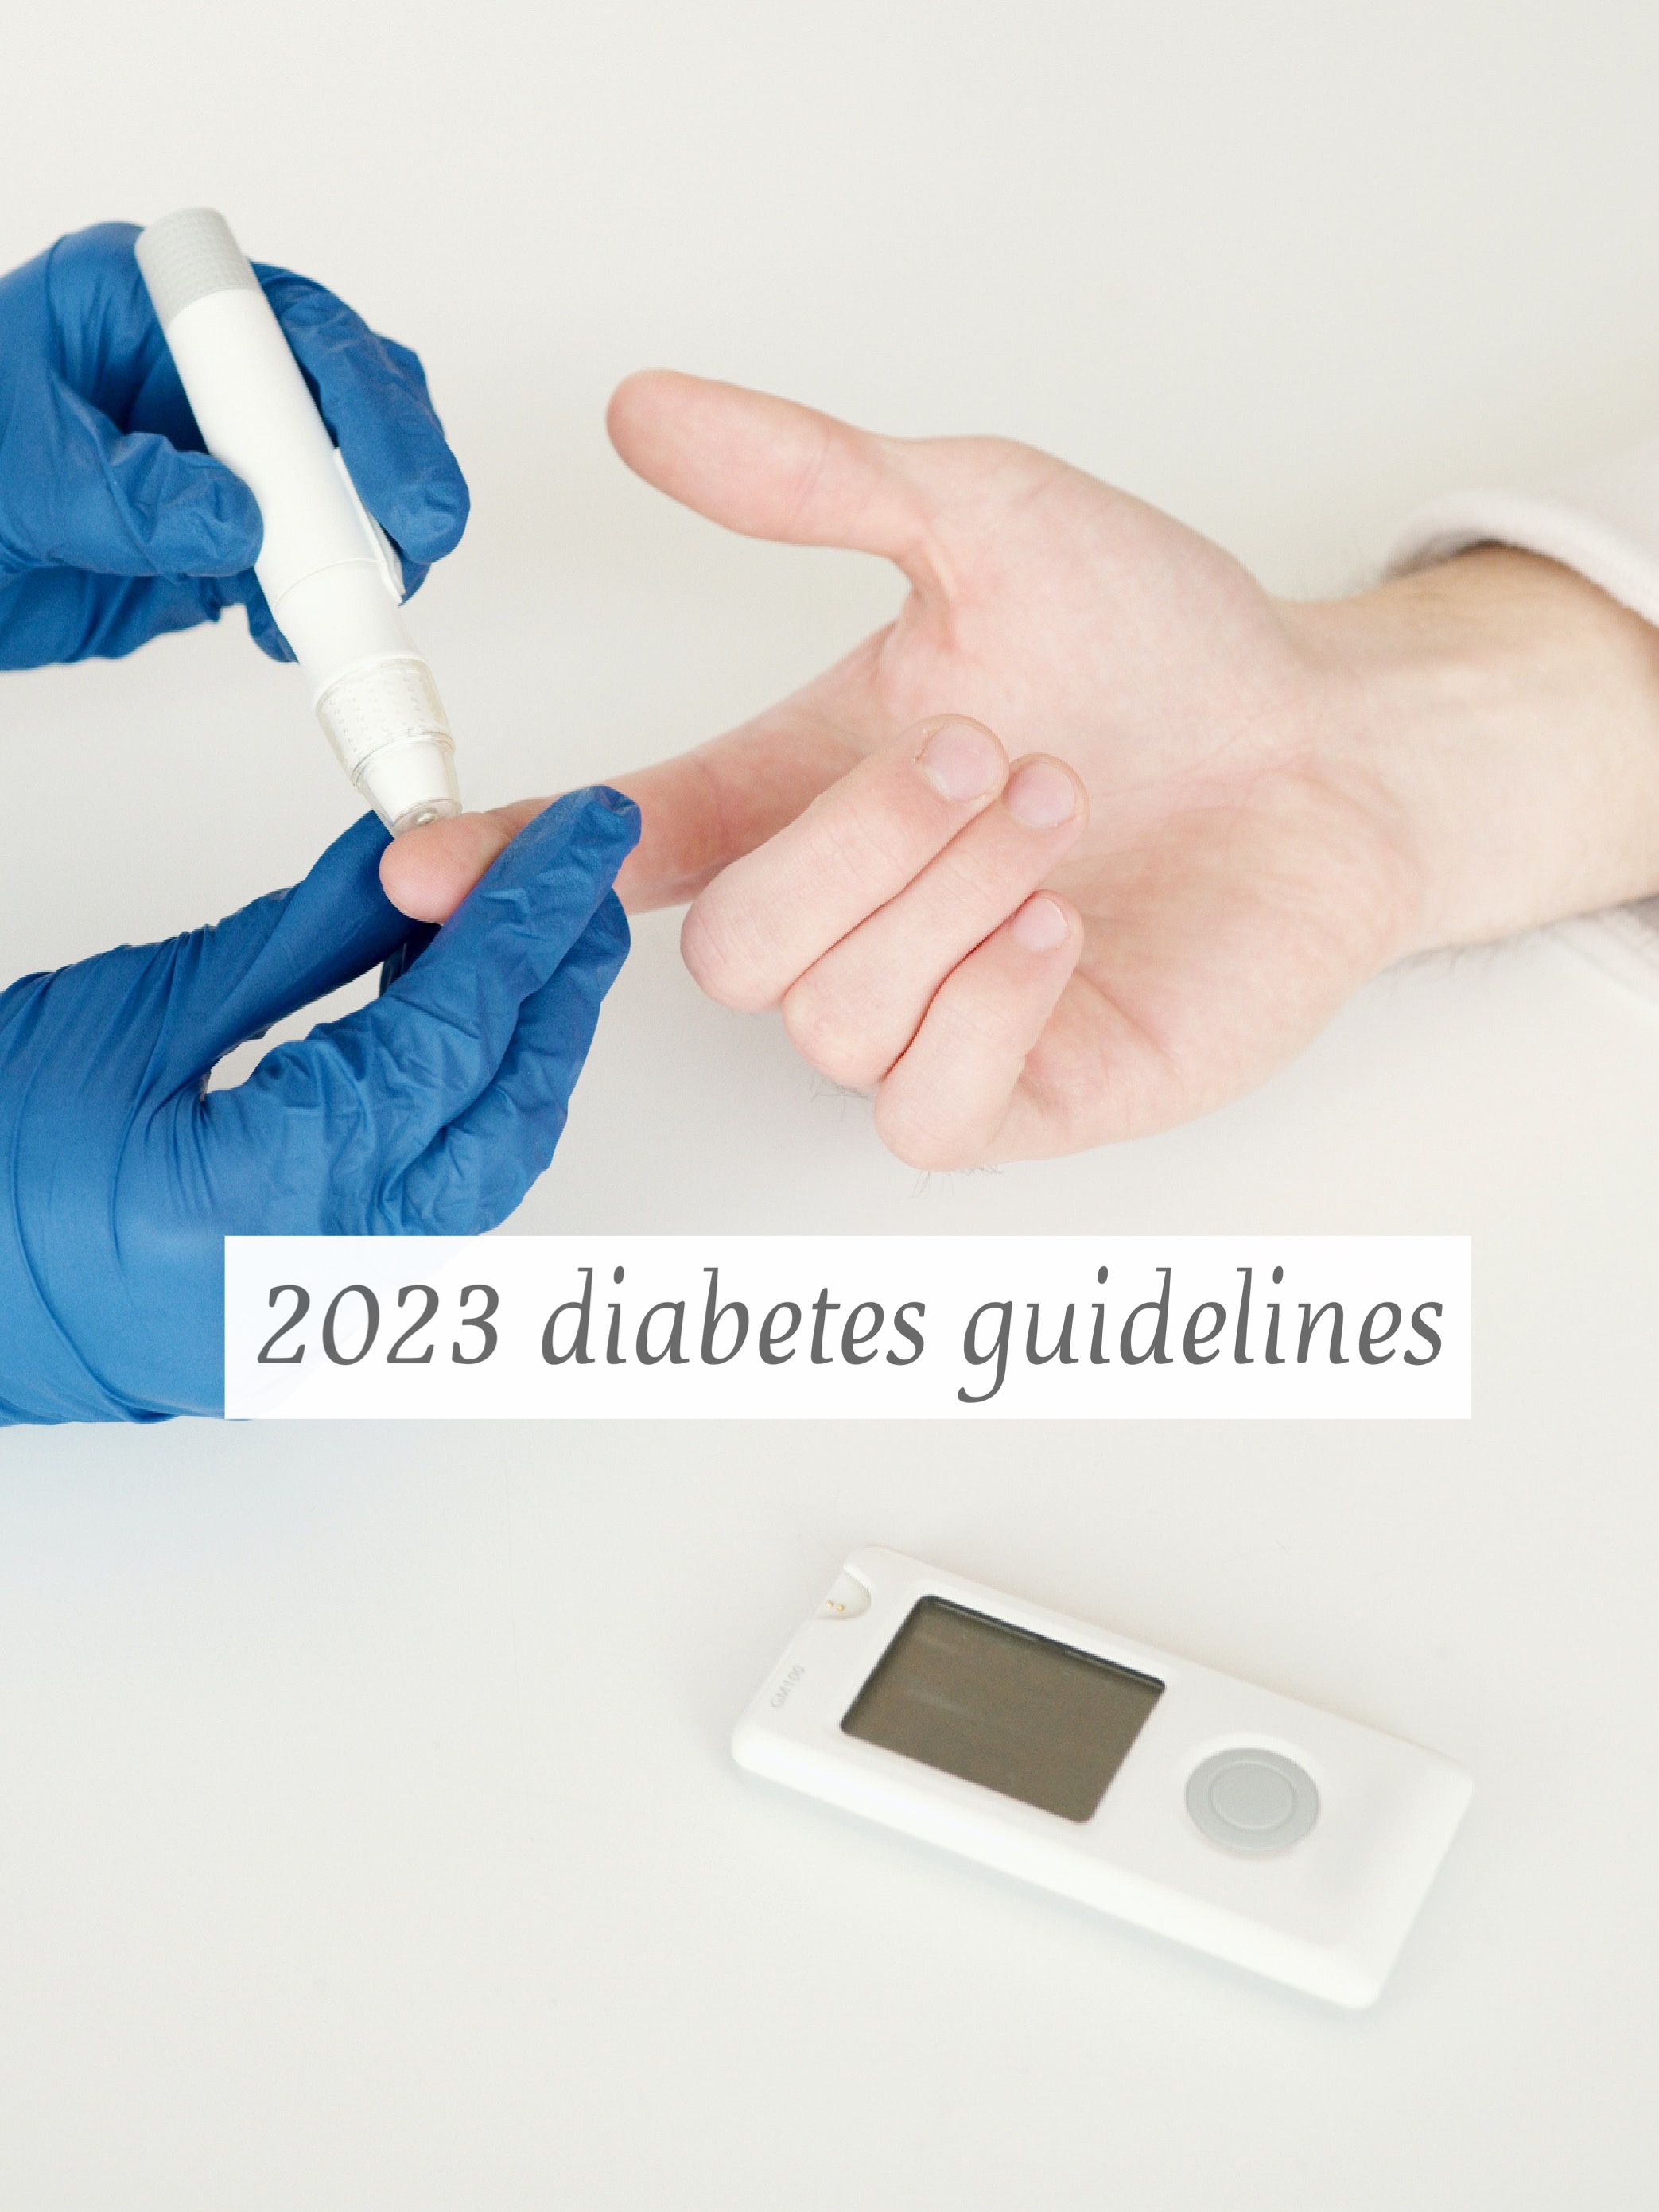 2023 diabetes guidelines